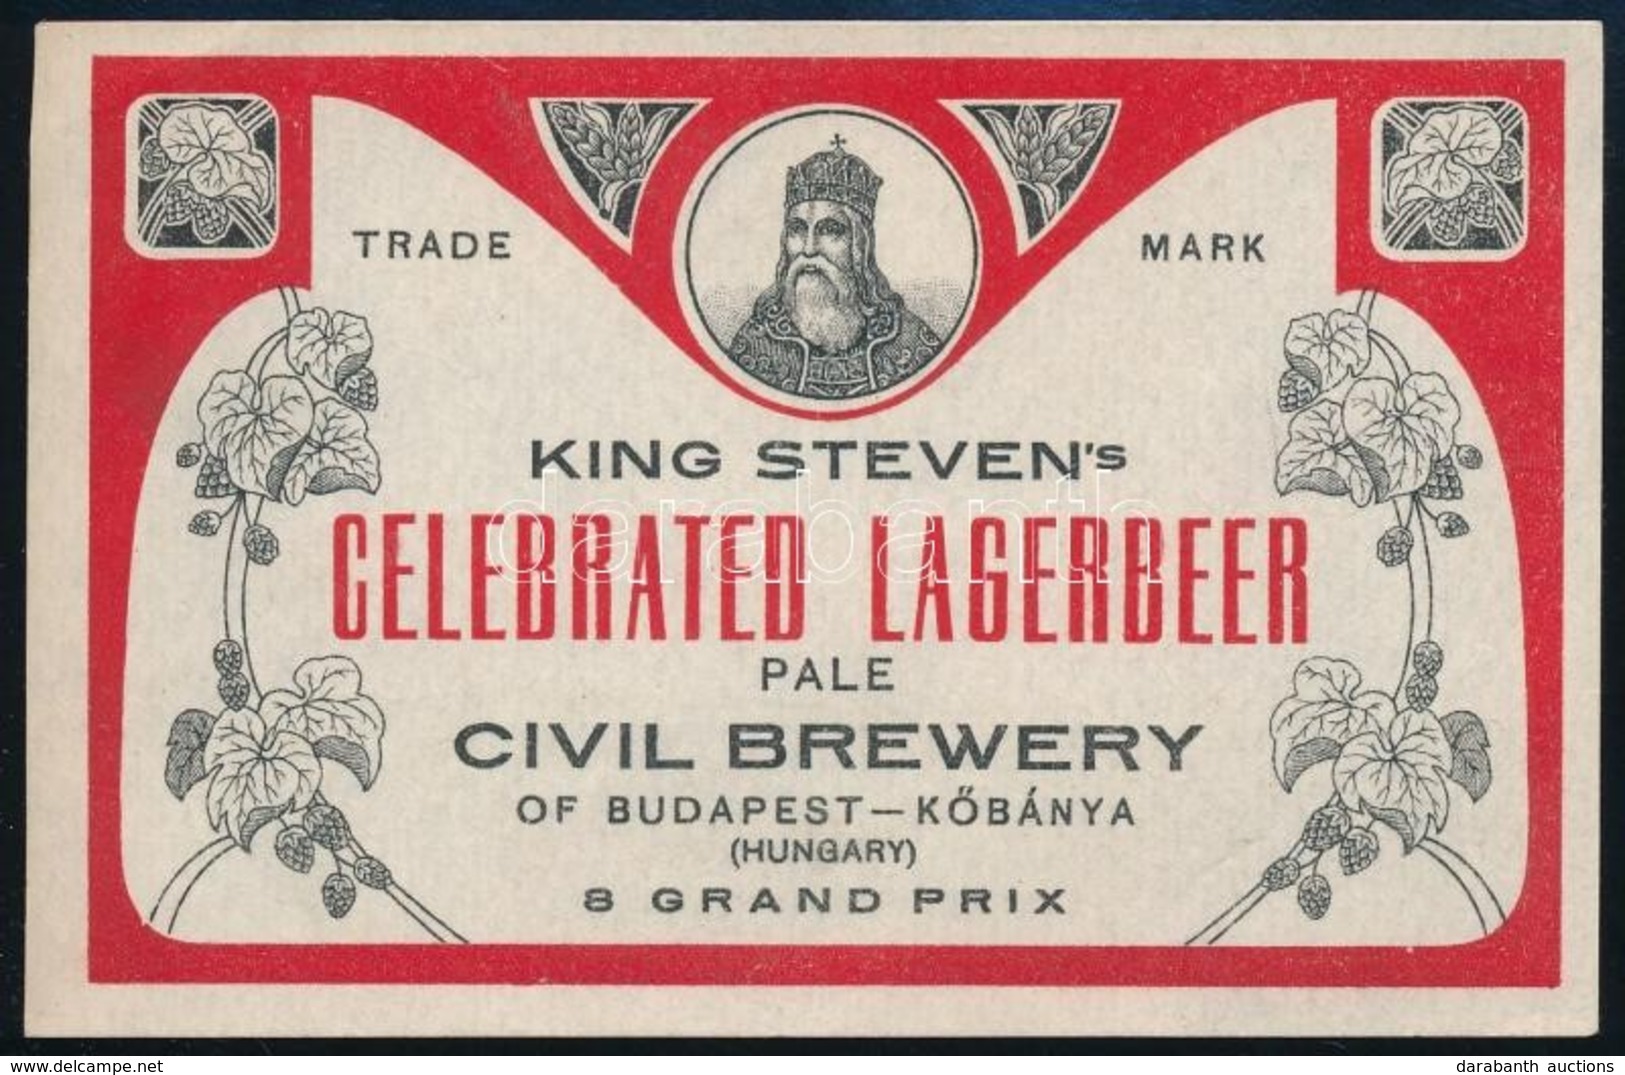 Cca 1920 Szent István Láger, Exportra Készült Sörcímke, Polgári Serfőzde, 7,5x12 Cm / Civil Brewery, King Steven's Celeb - Pubblicitari